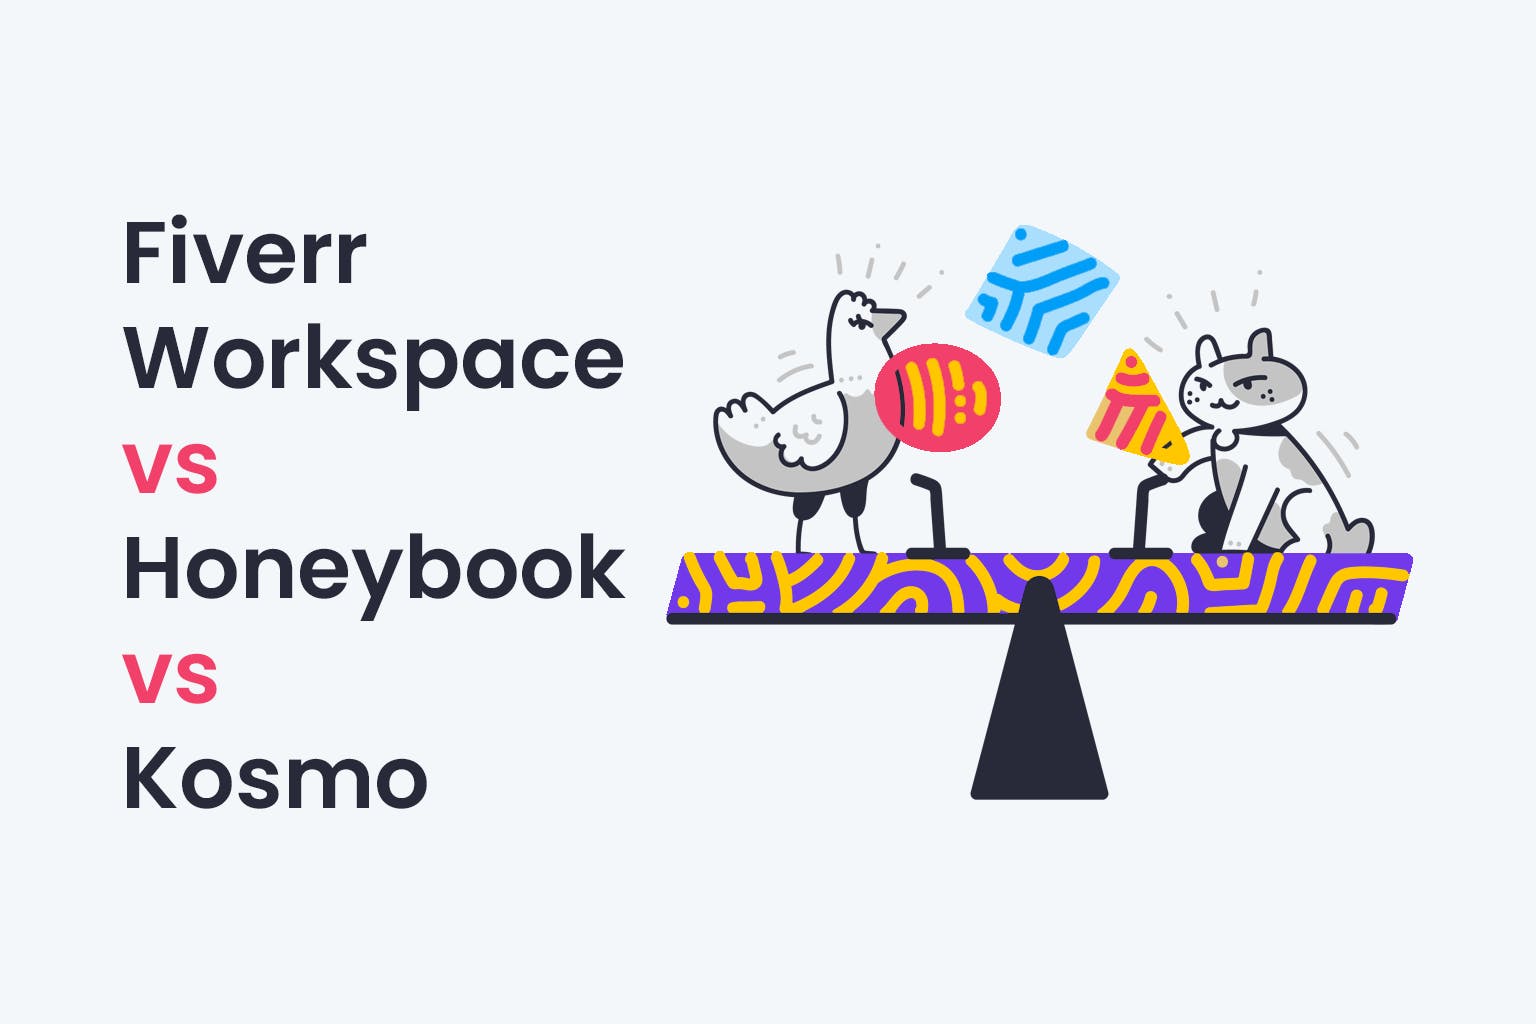 Fiverr Workspace vs Honeybook vs Kosmo